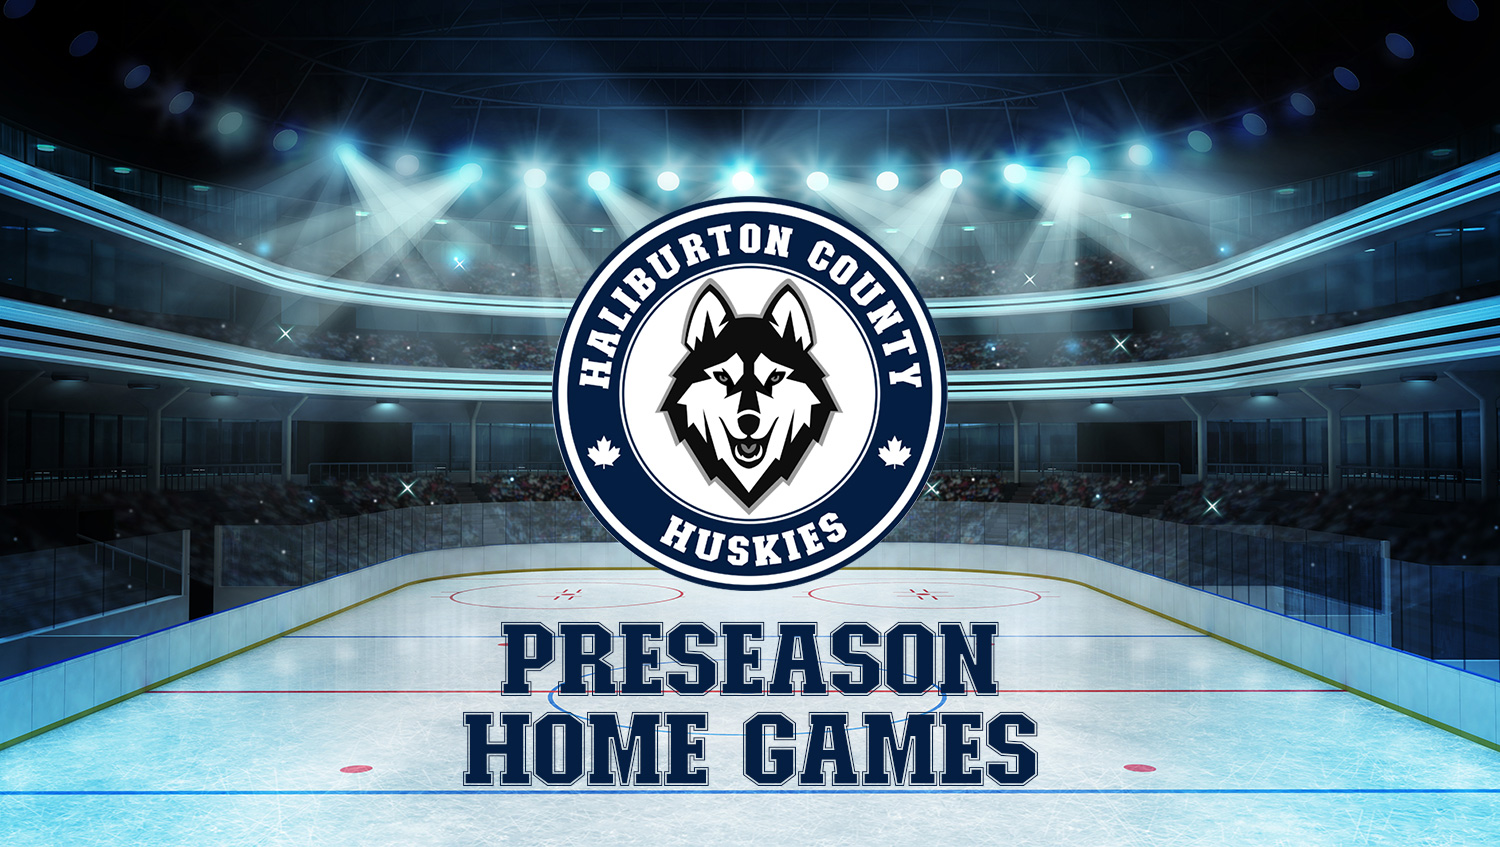 Huskies PreSeason Home Games